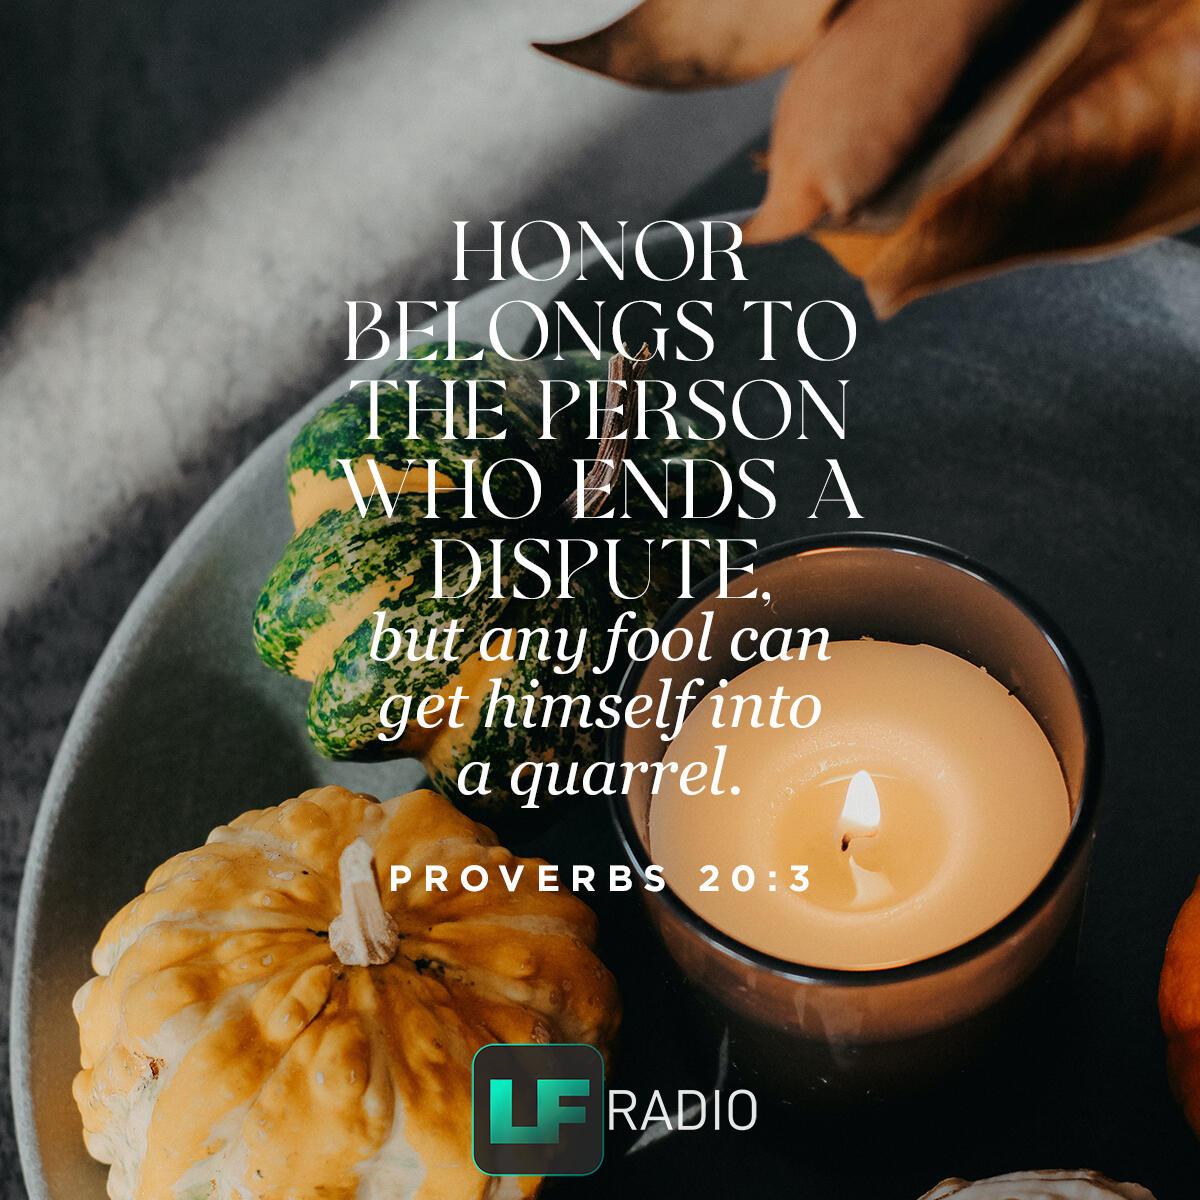 Proverbs 20:3